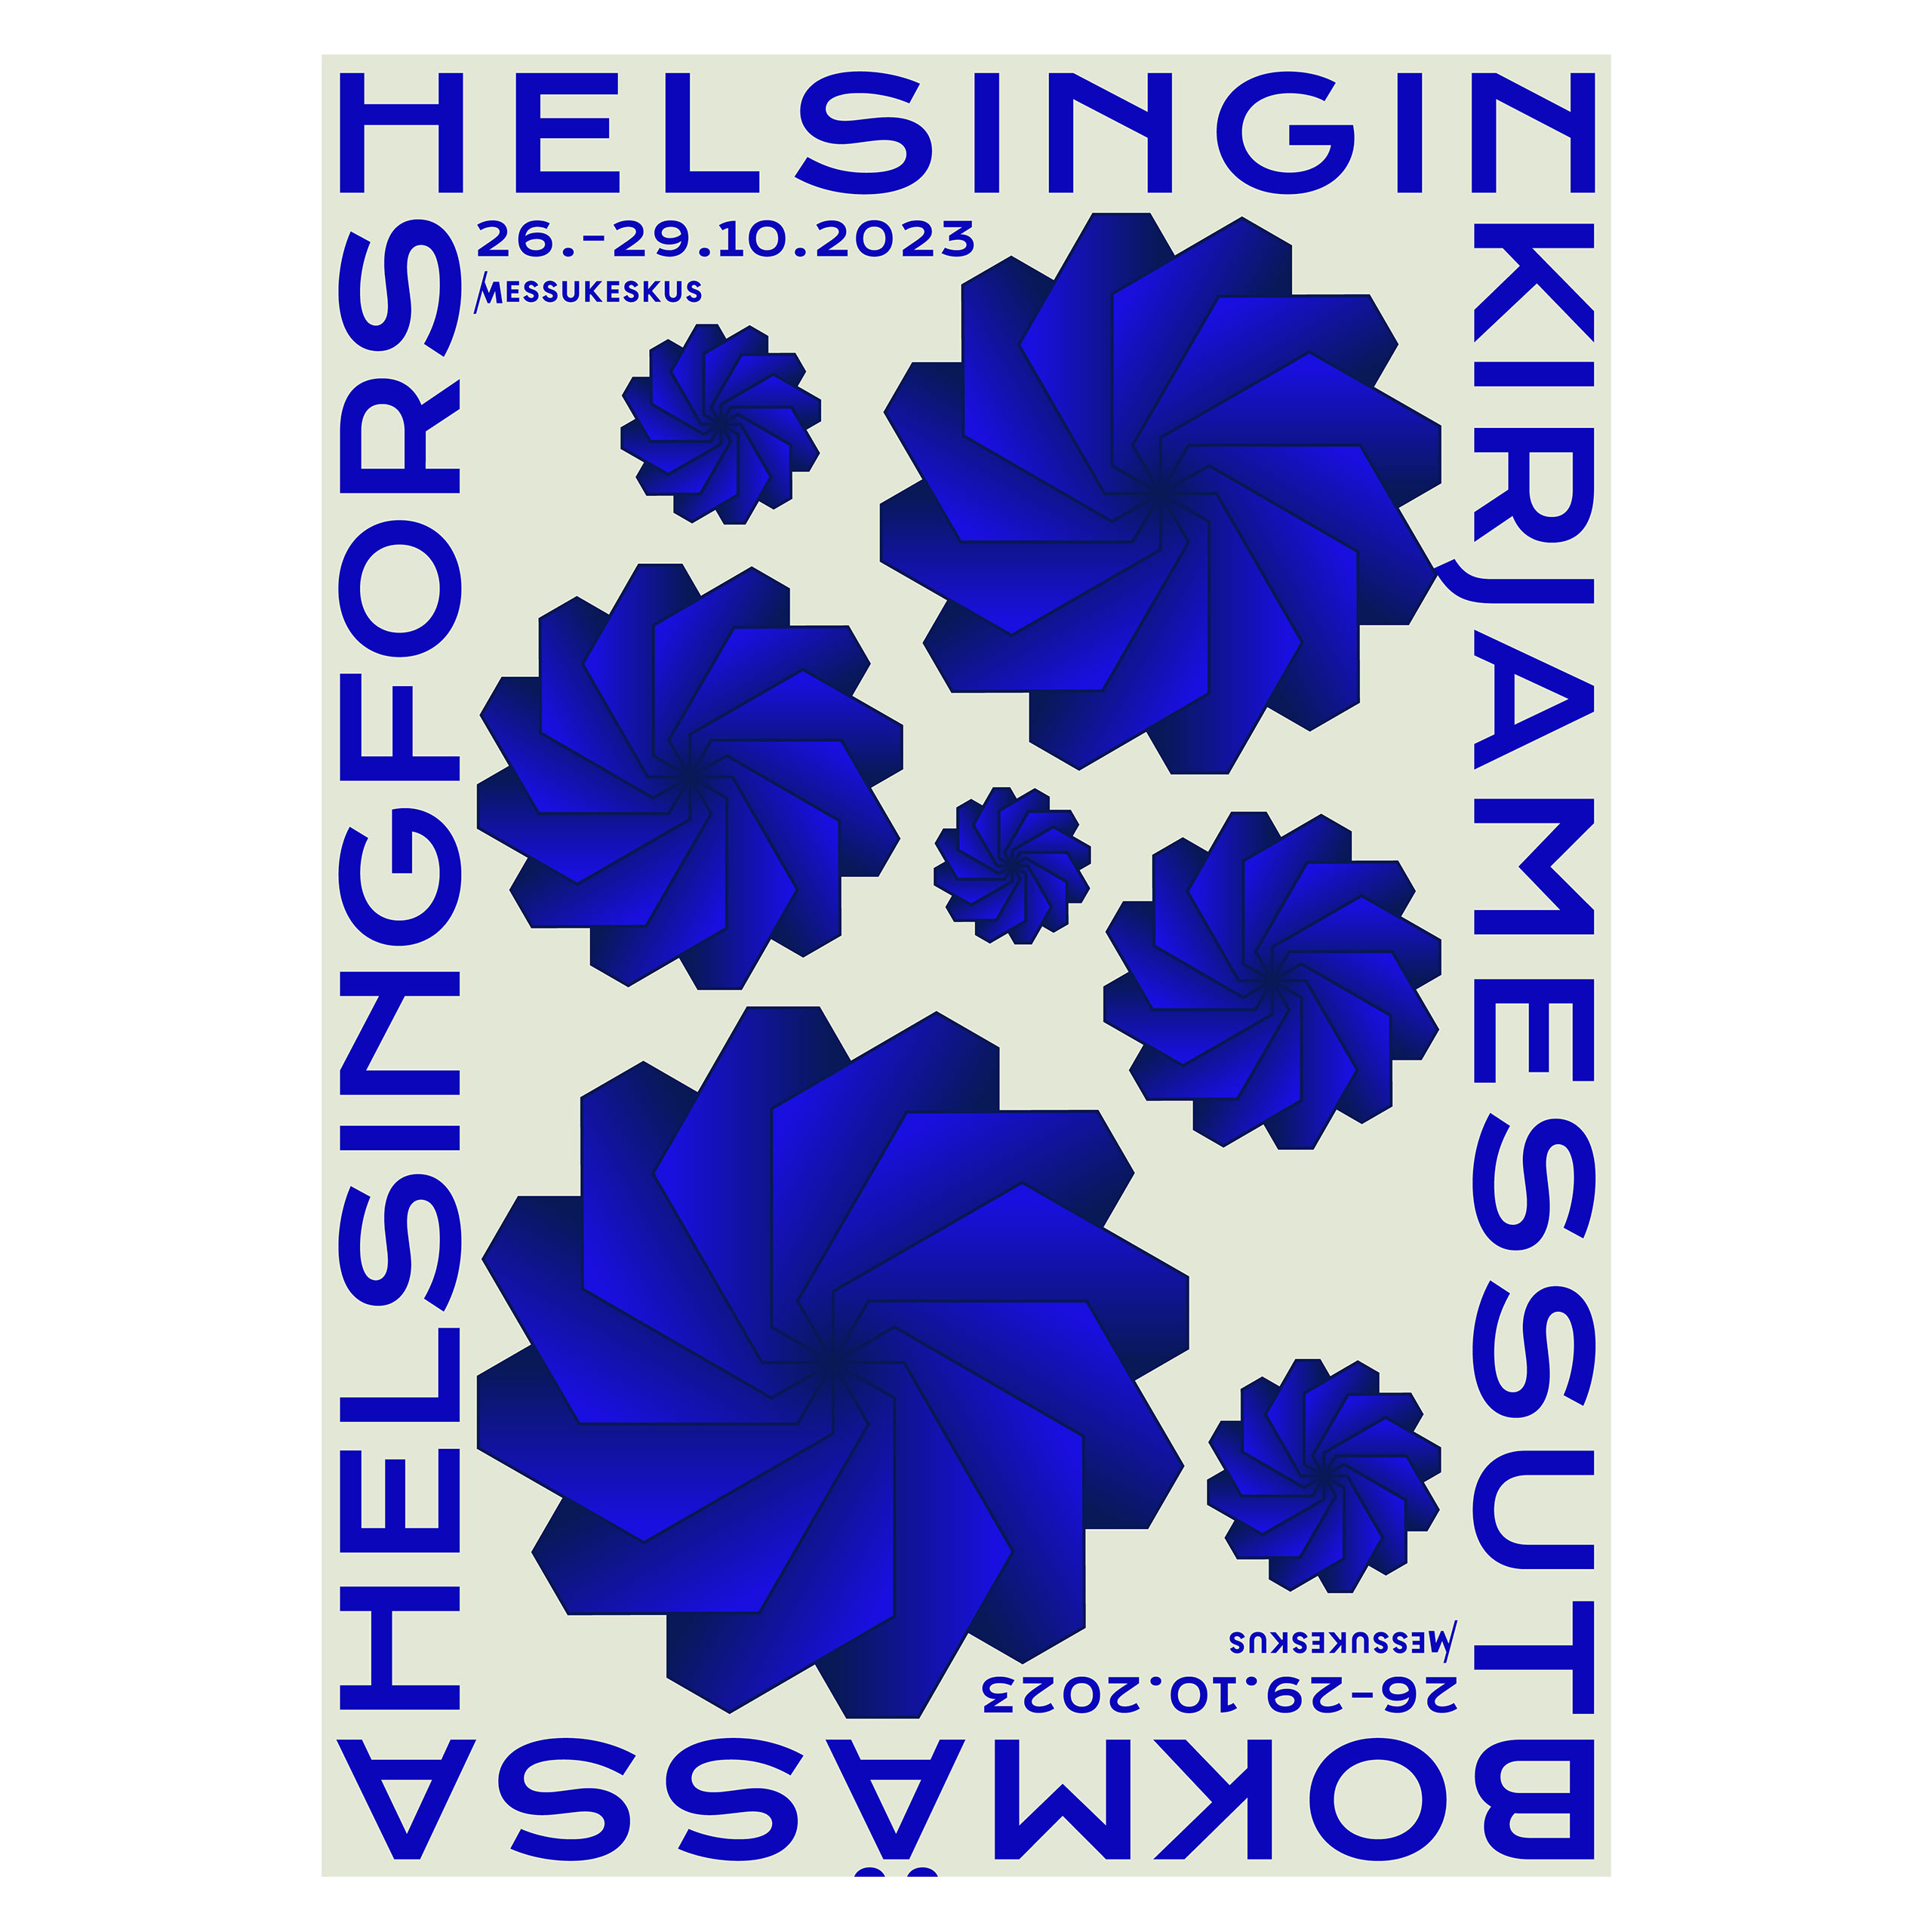 Helsingin kirjamessut 2023 poster